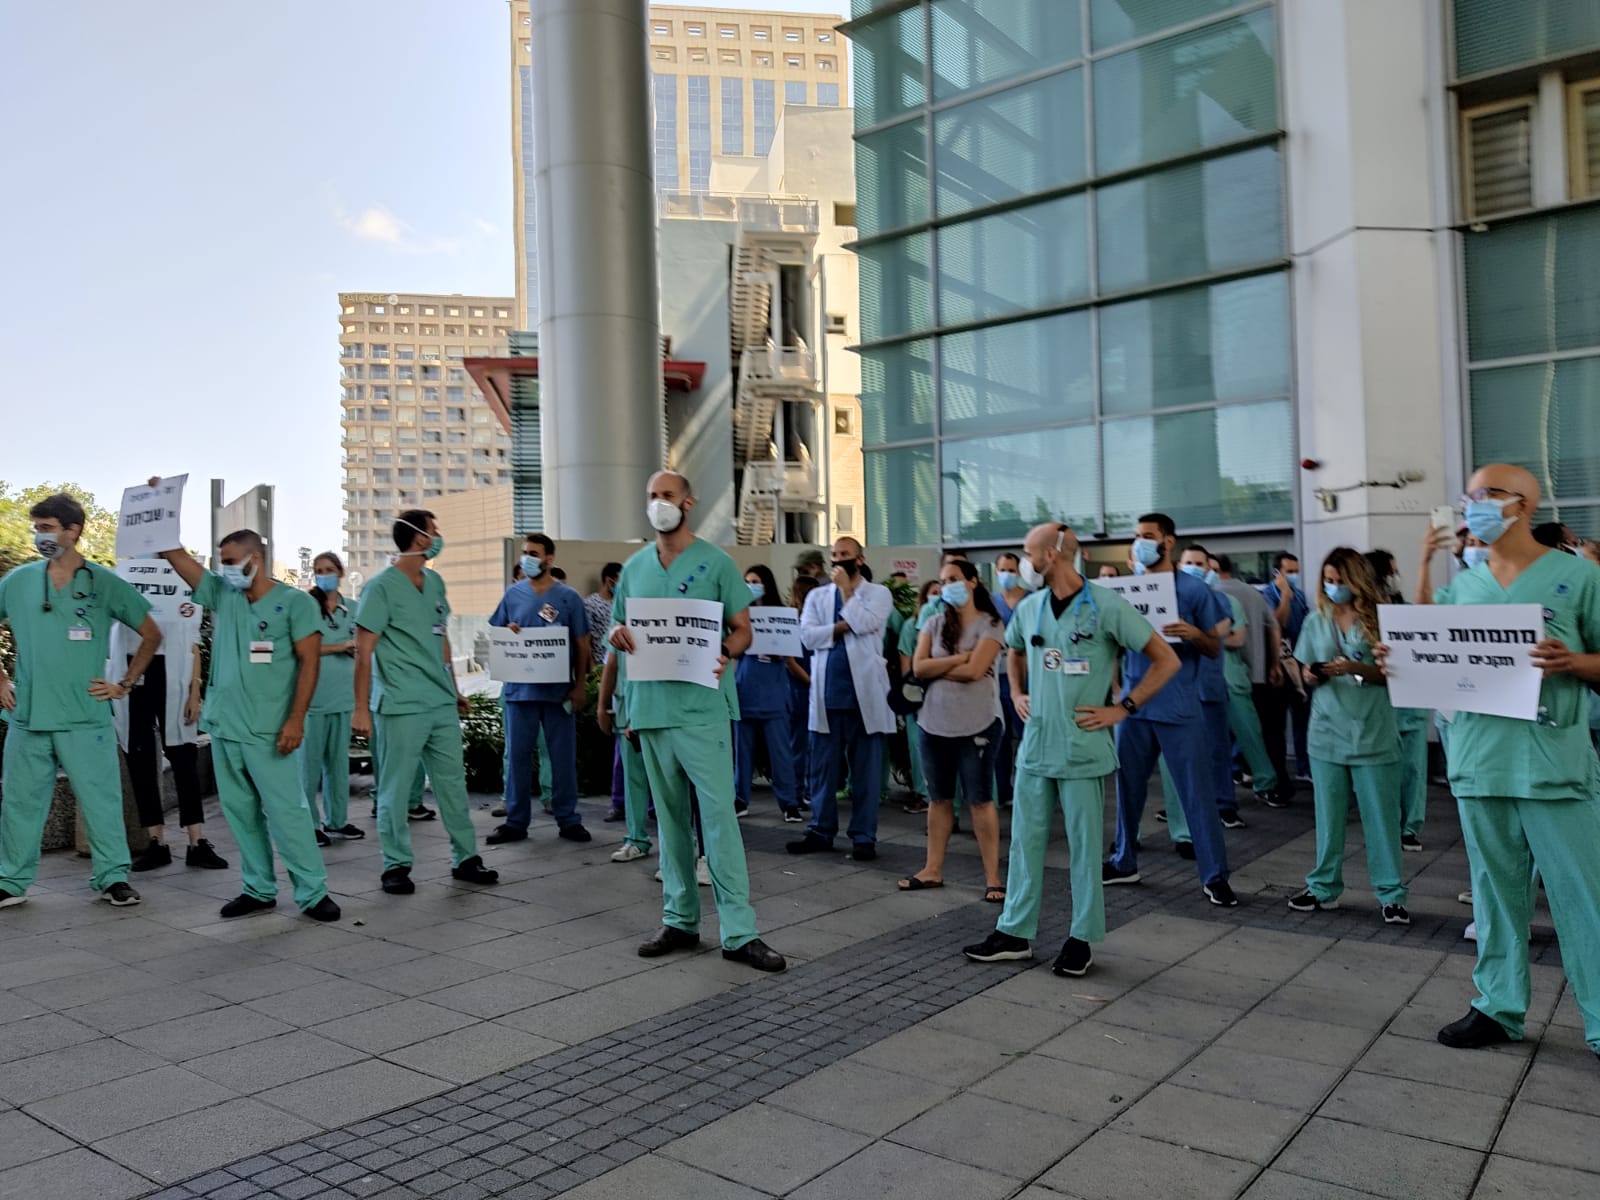 הפגנת רופאים מתמחים במהלך שביתת מחאה בבית החולים איכילוב בתל אביב בדרישה לתוספת תקנים, 20 ביולי 2020 (צילום: יואב רימר)